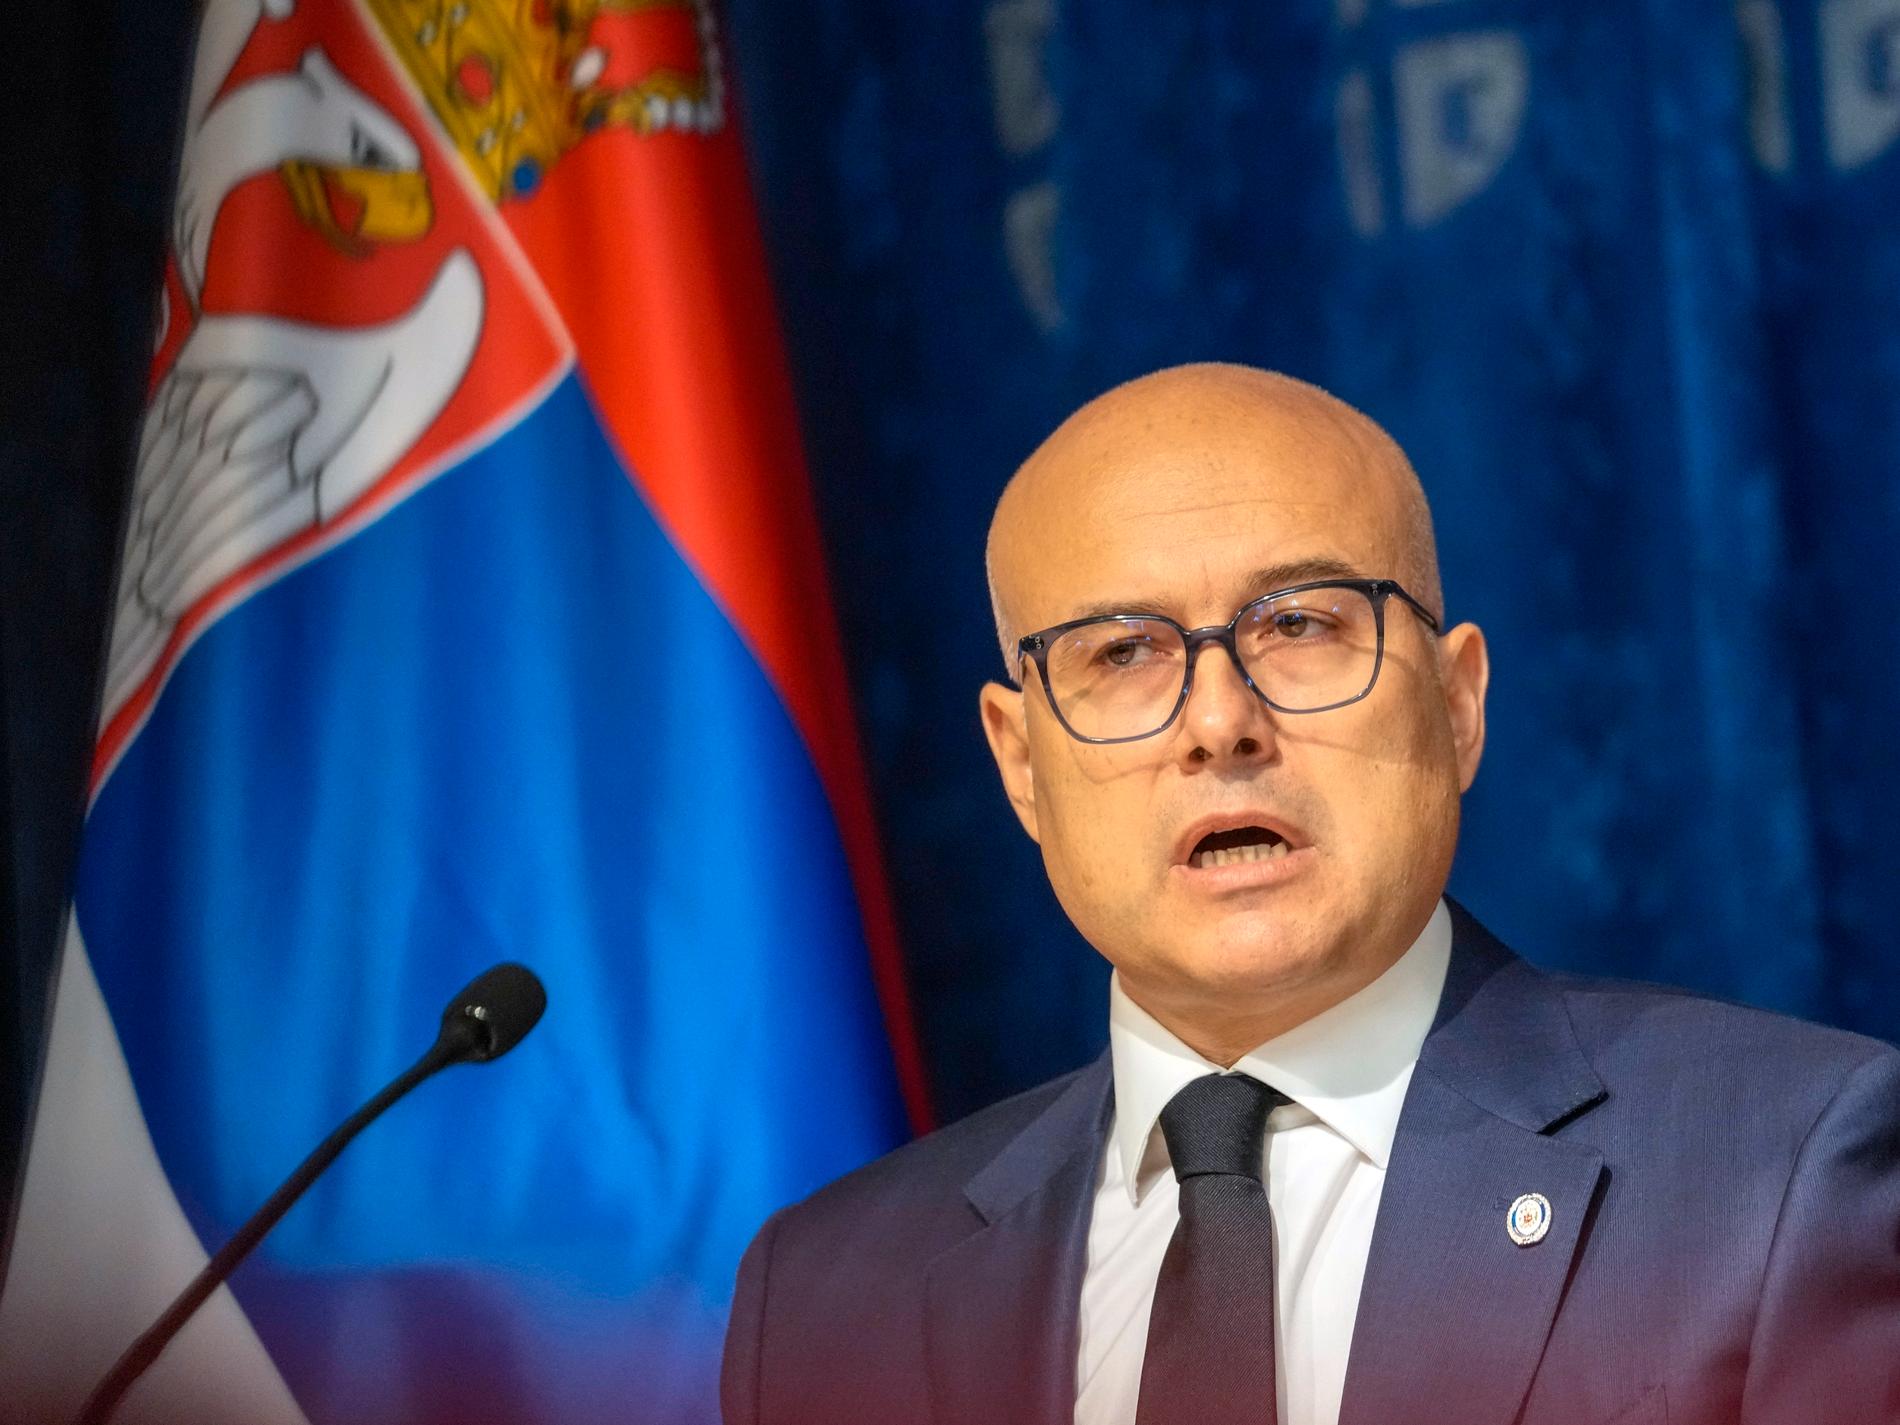 Prorysk regering invald i Serbien